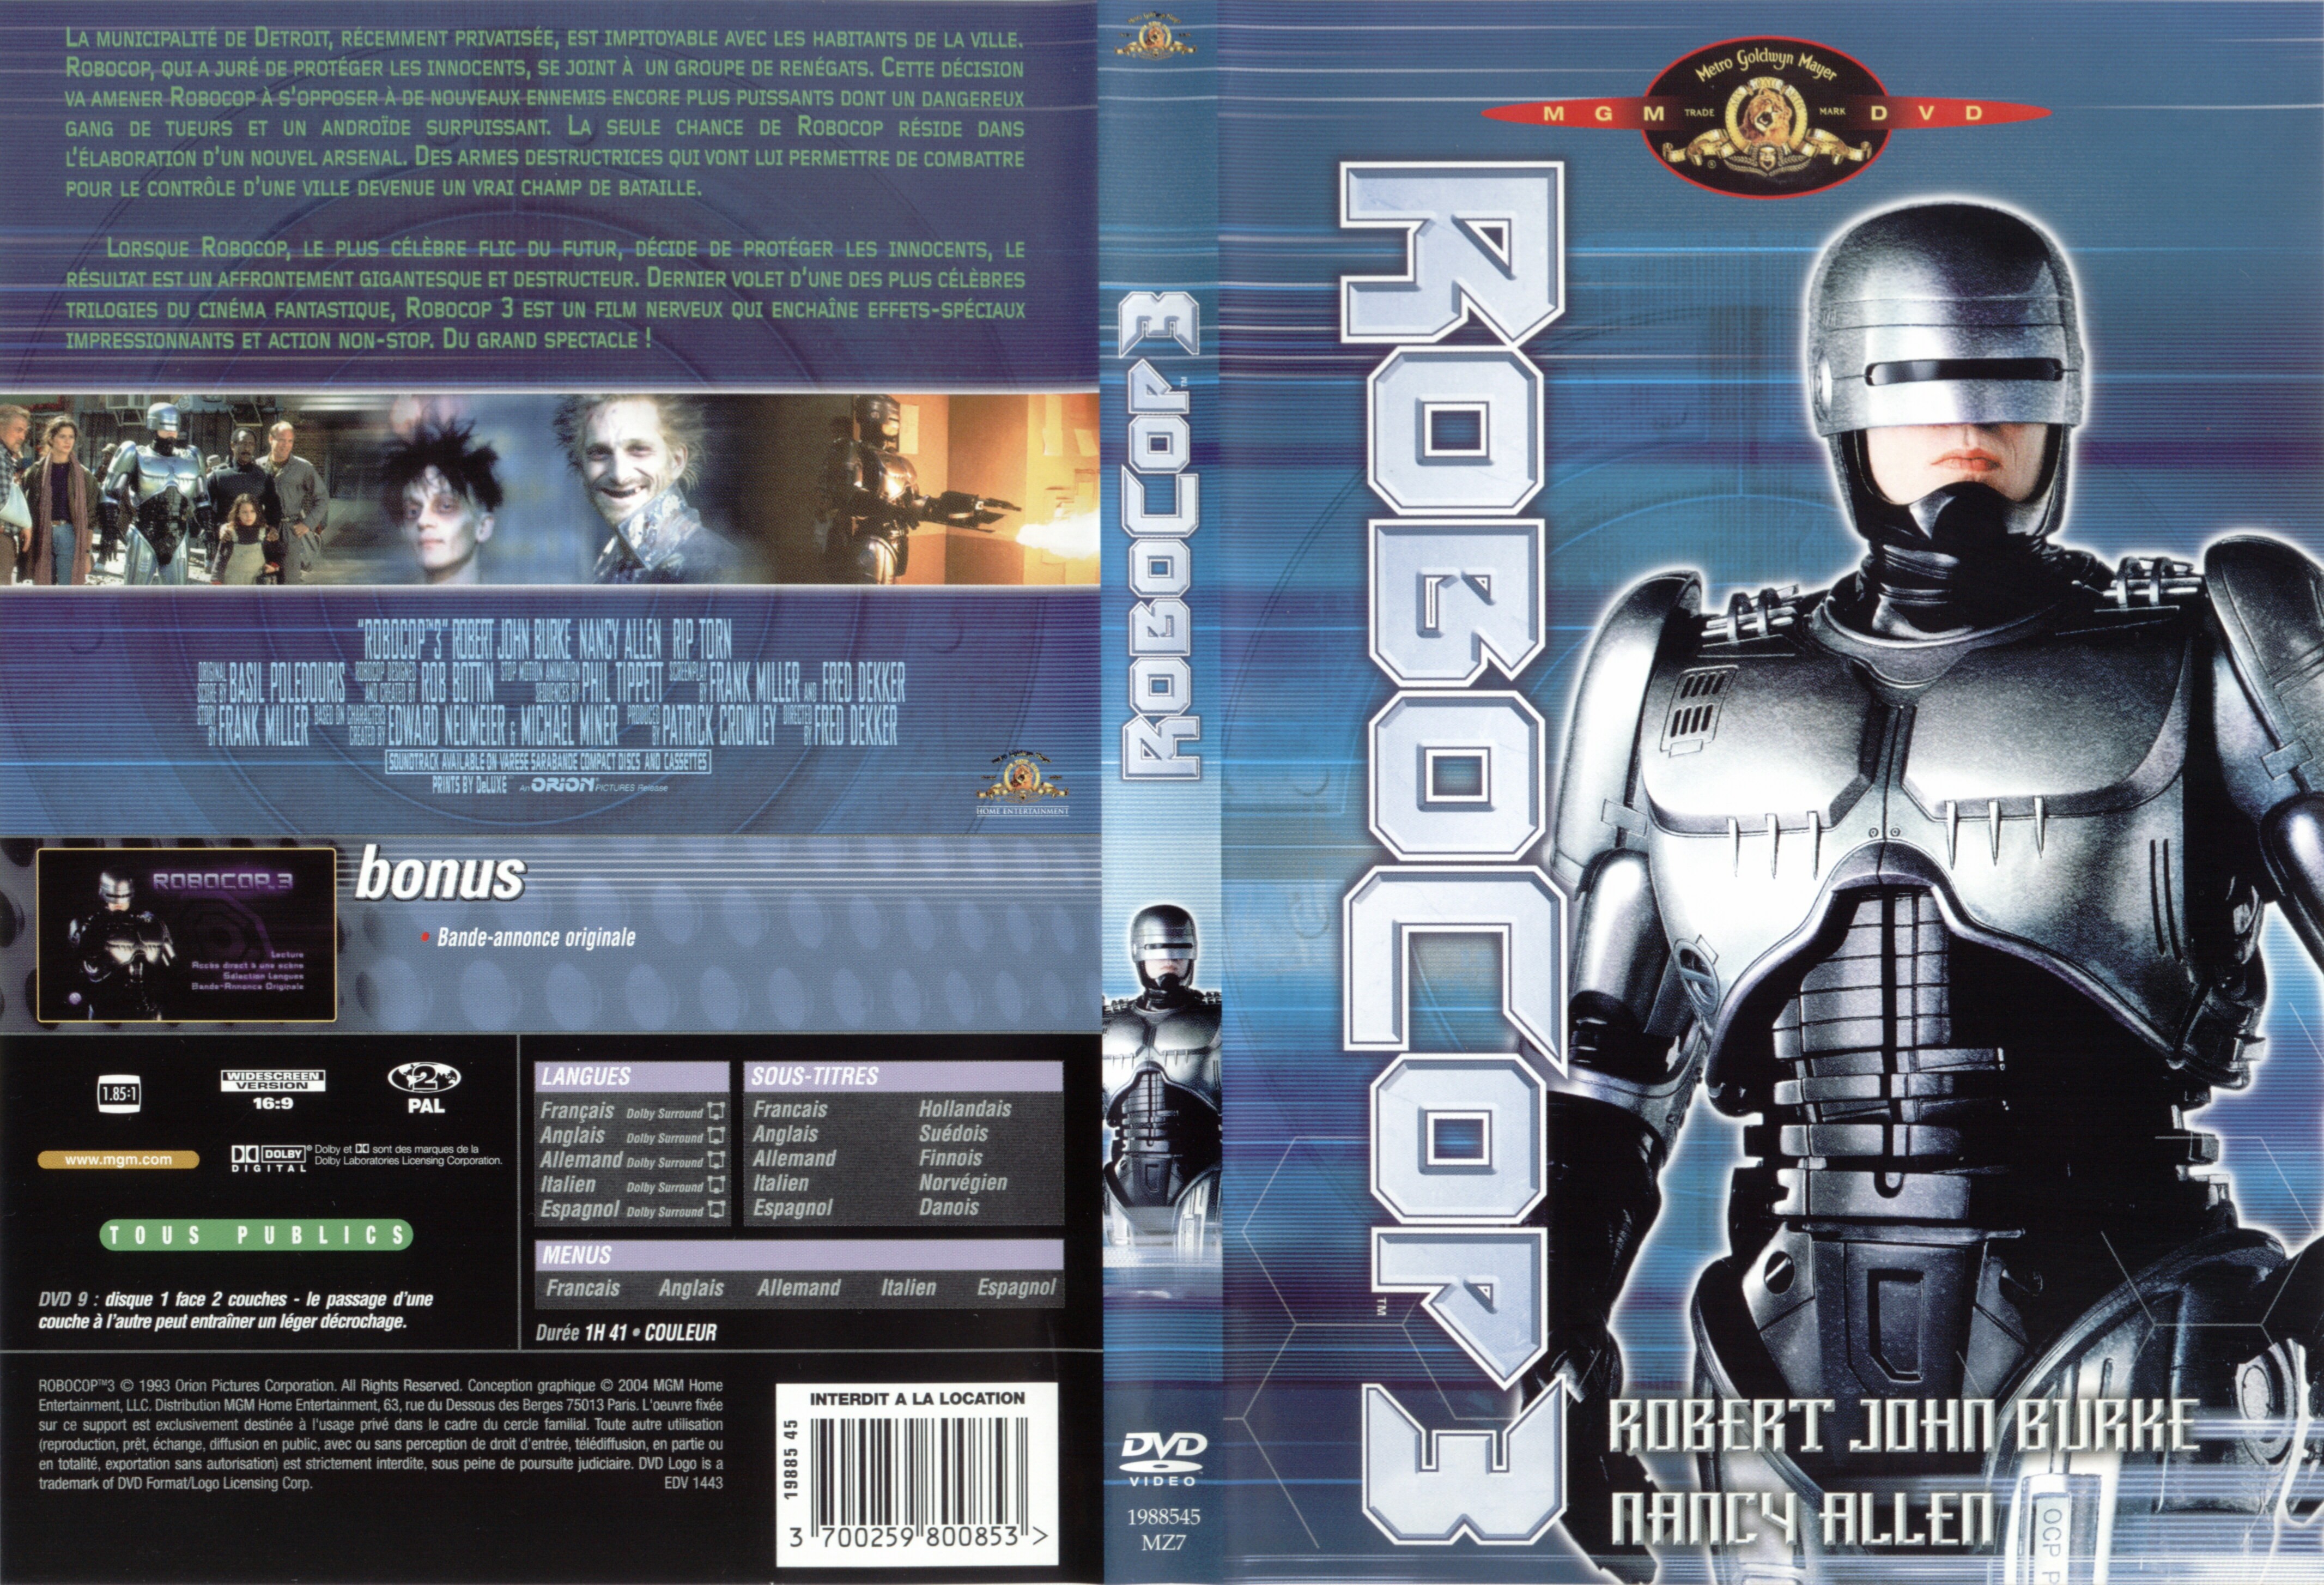 Jaquette DVD Robocop 3 v2